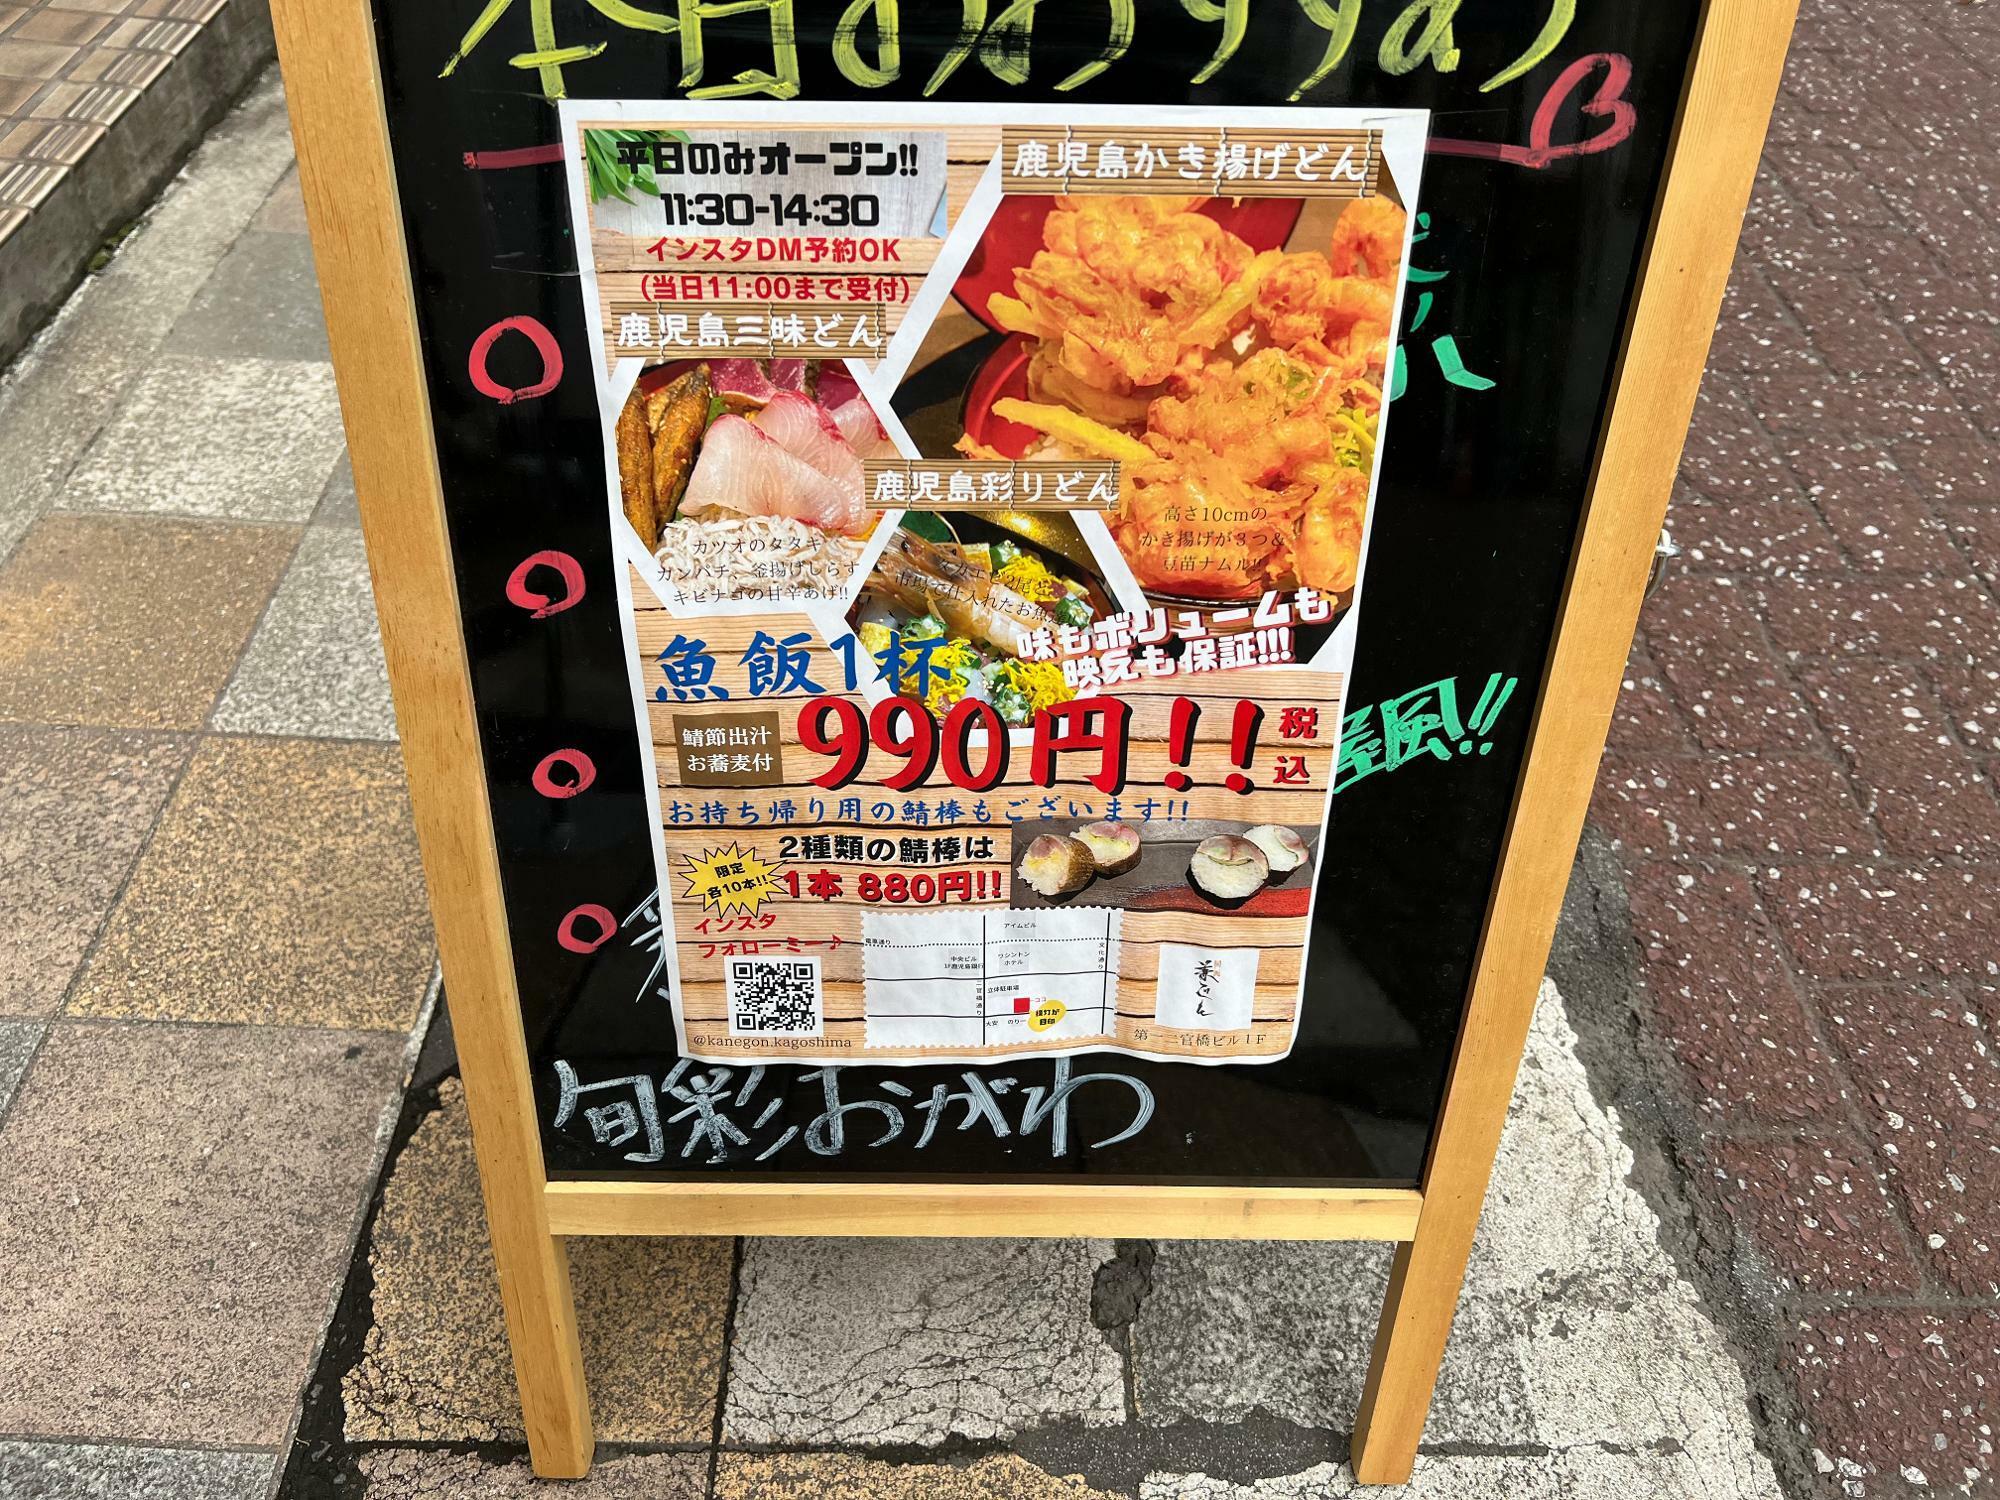 990円ワンプライスの海鮮丼